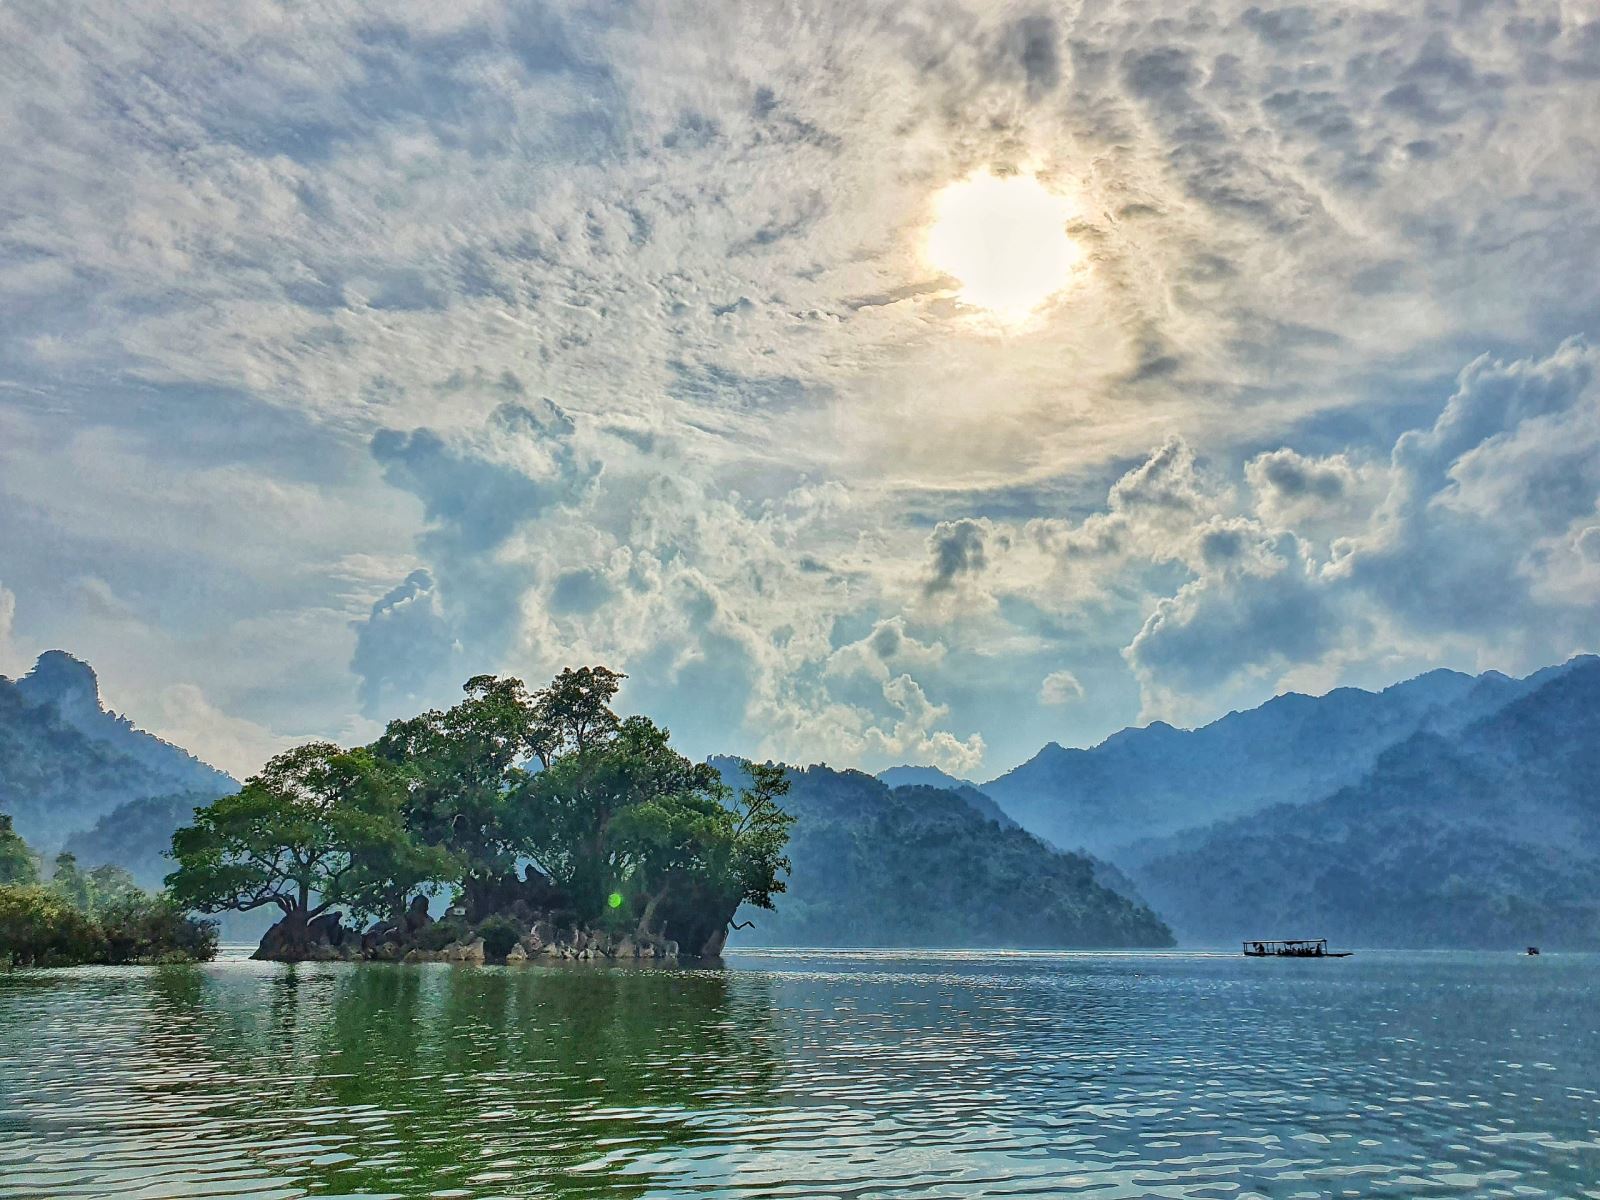 Tour du lịch : Hồ Ba Bể - Thác Bản Giốc - Chùa Phật Tích Trúc Lâm - Động Ngườm Ngao - Hang Pác Pó